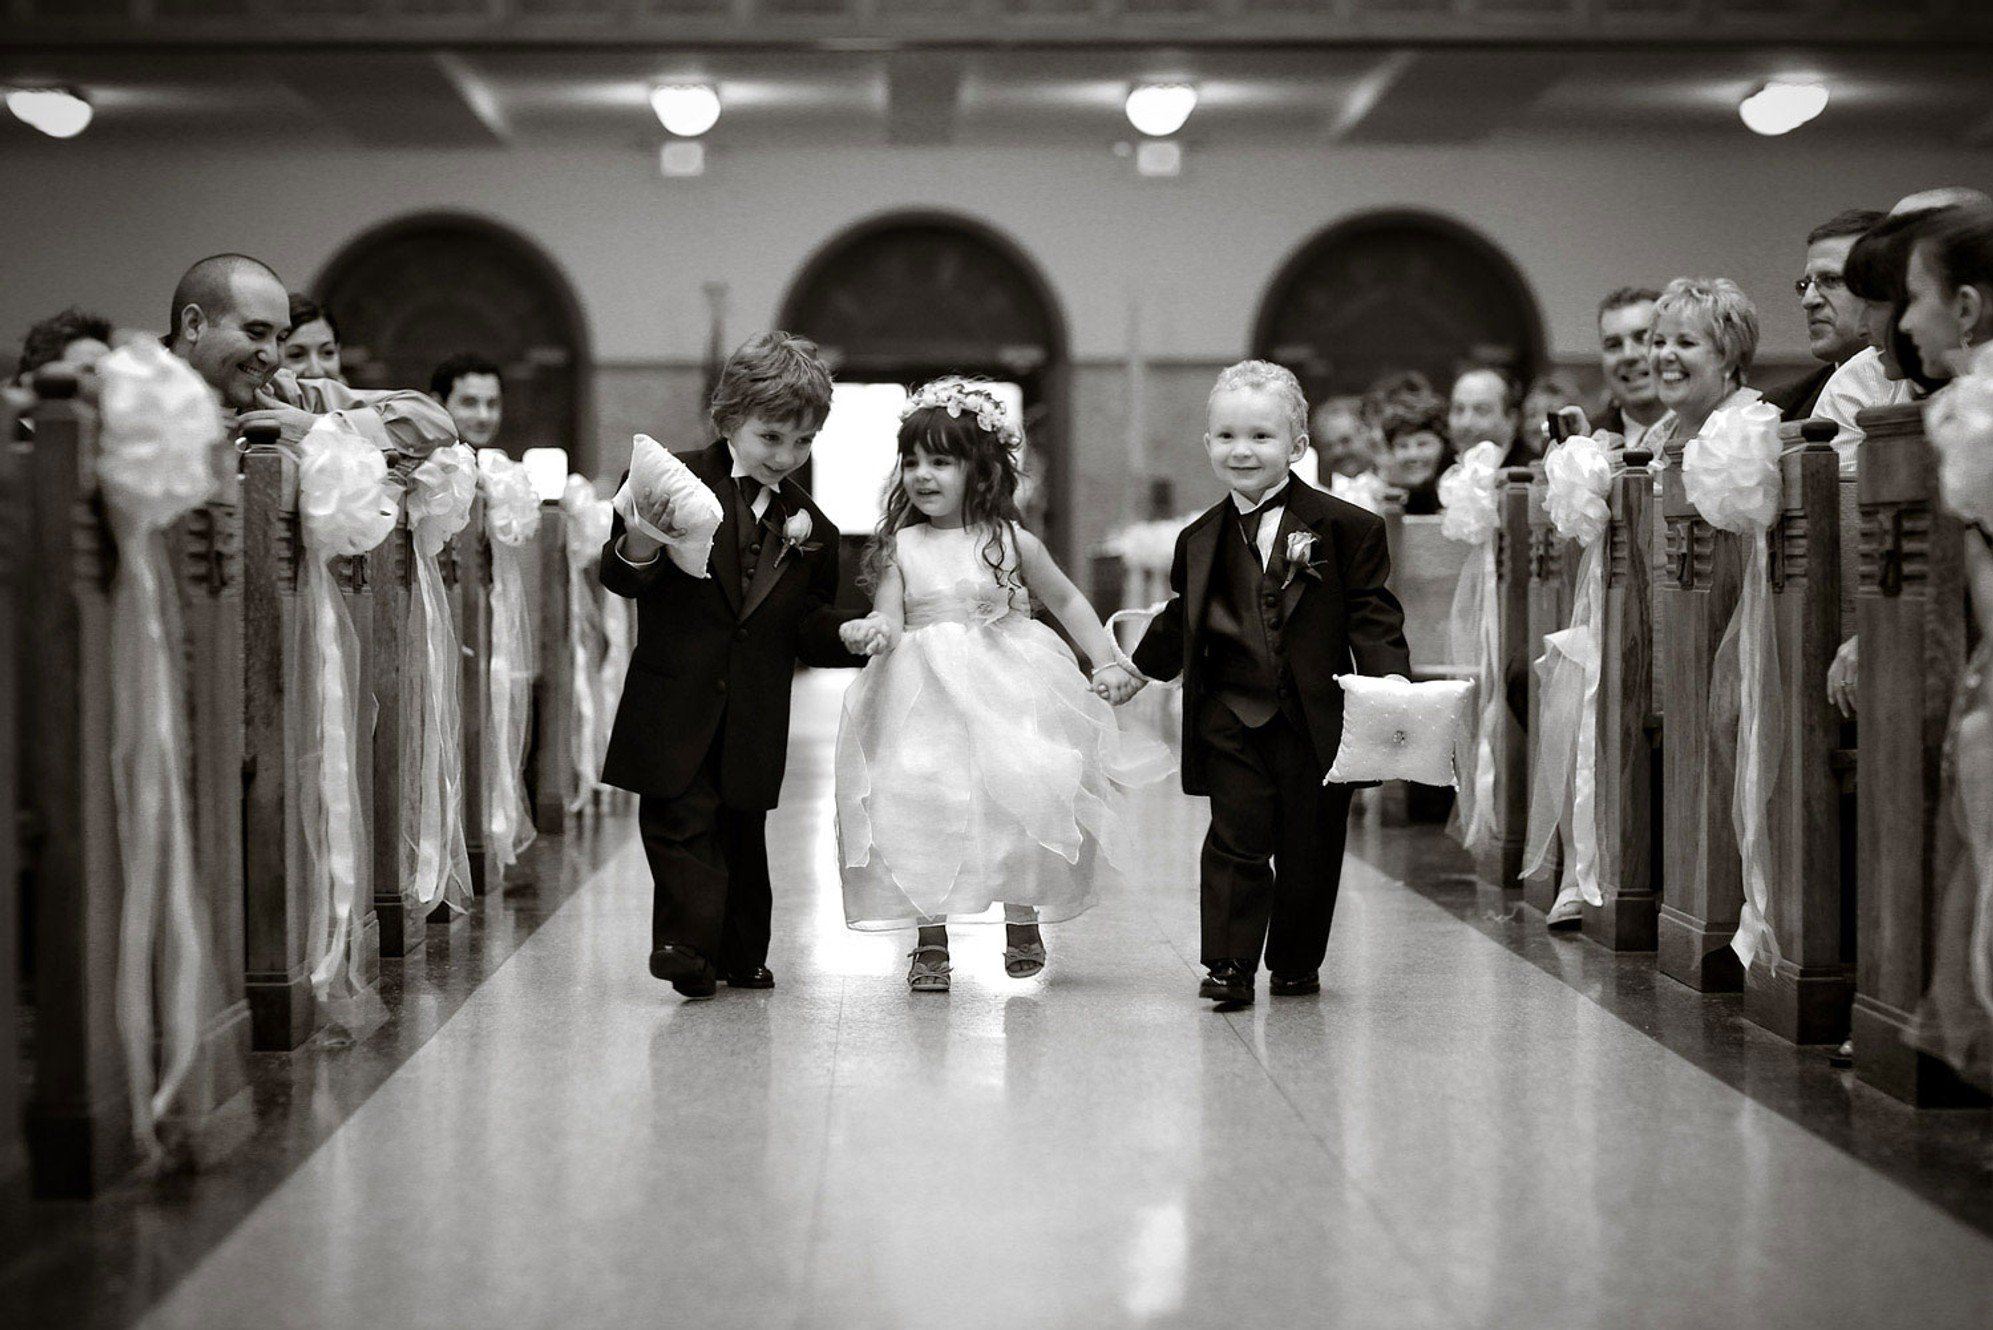 Дети о замужестве. Дети в свадебных нарядах. Свадебная церемония с детьми. Дети на свадьбе. Дети жених и невеста.